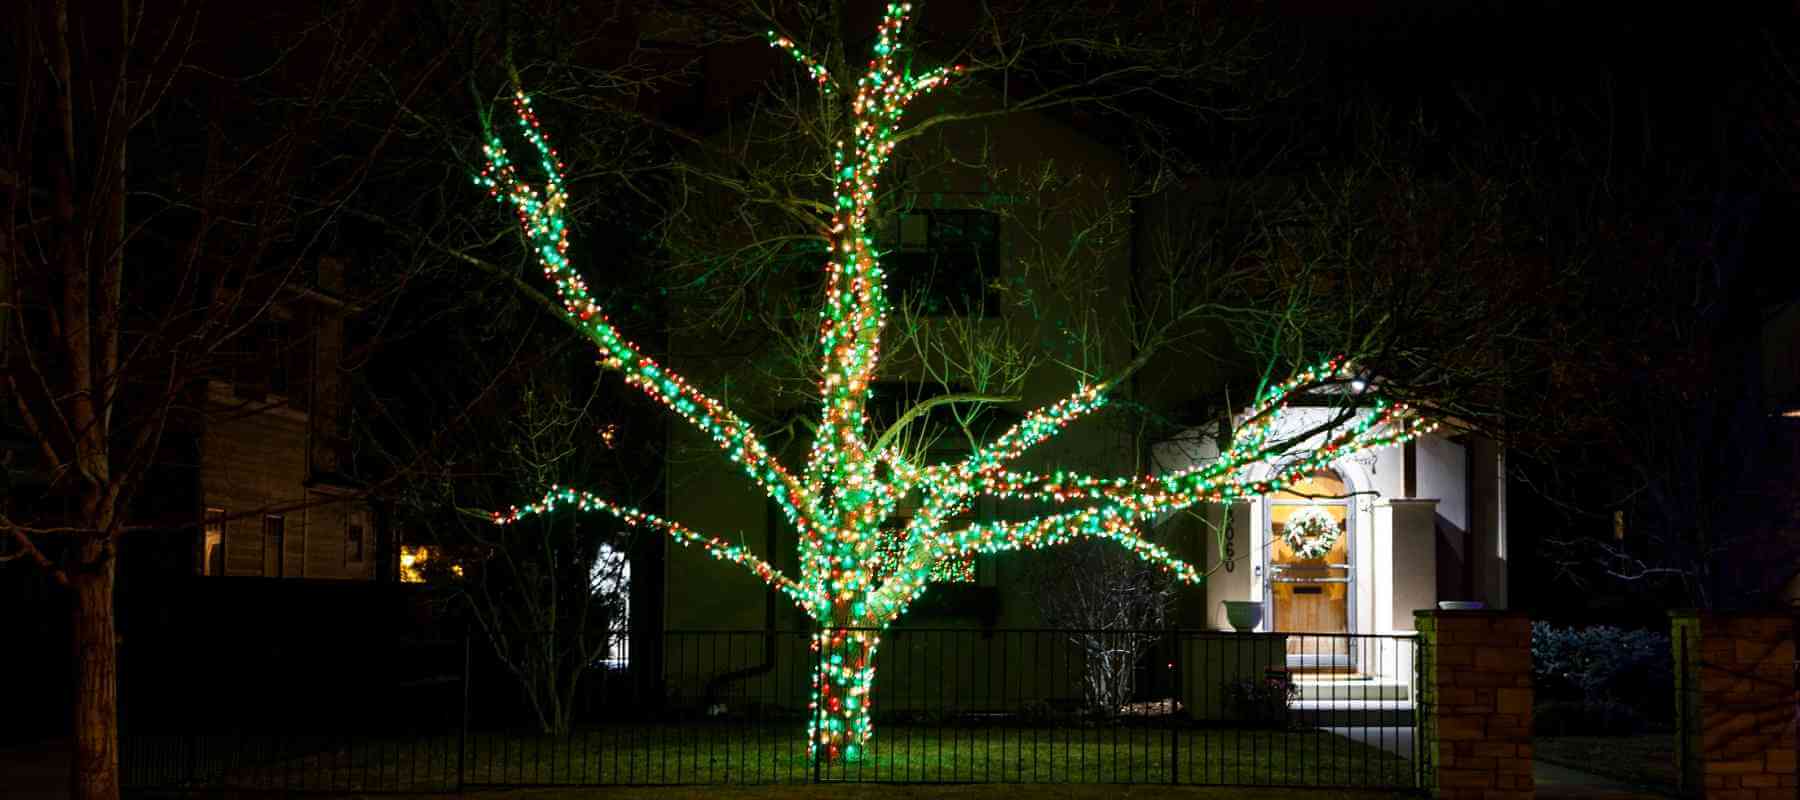 Feds to Regulate Christmas Lights